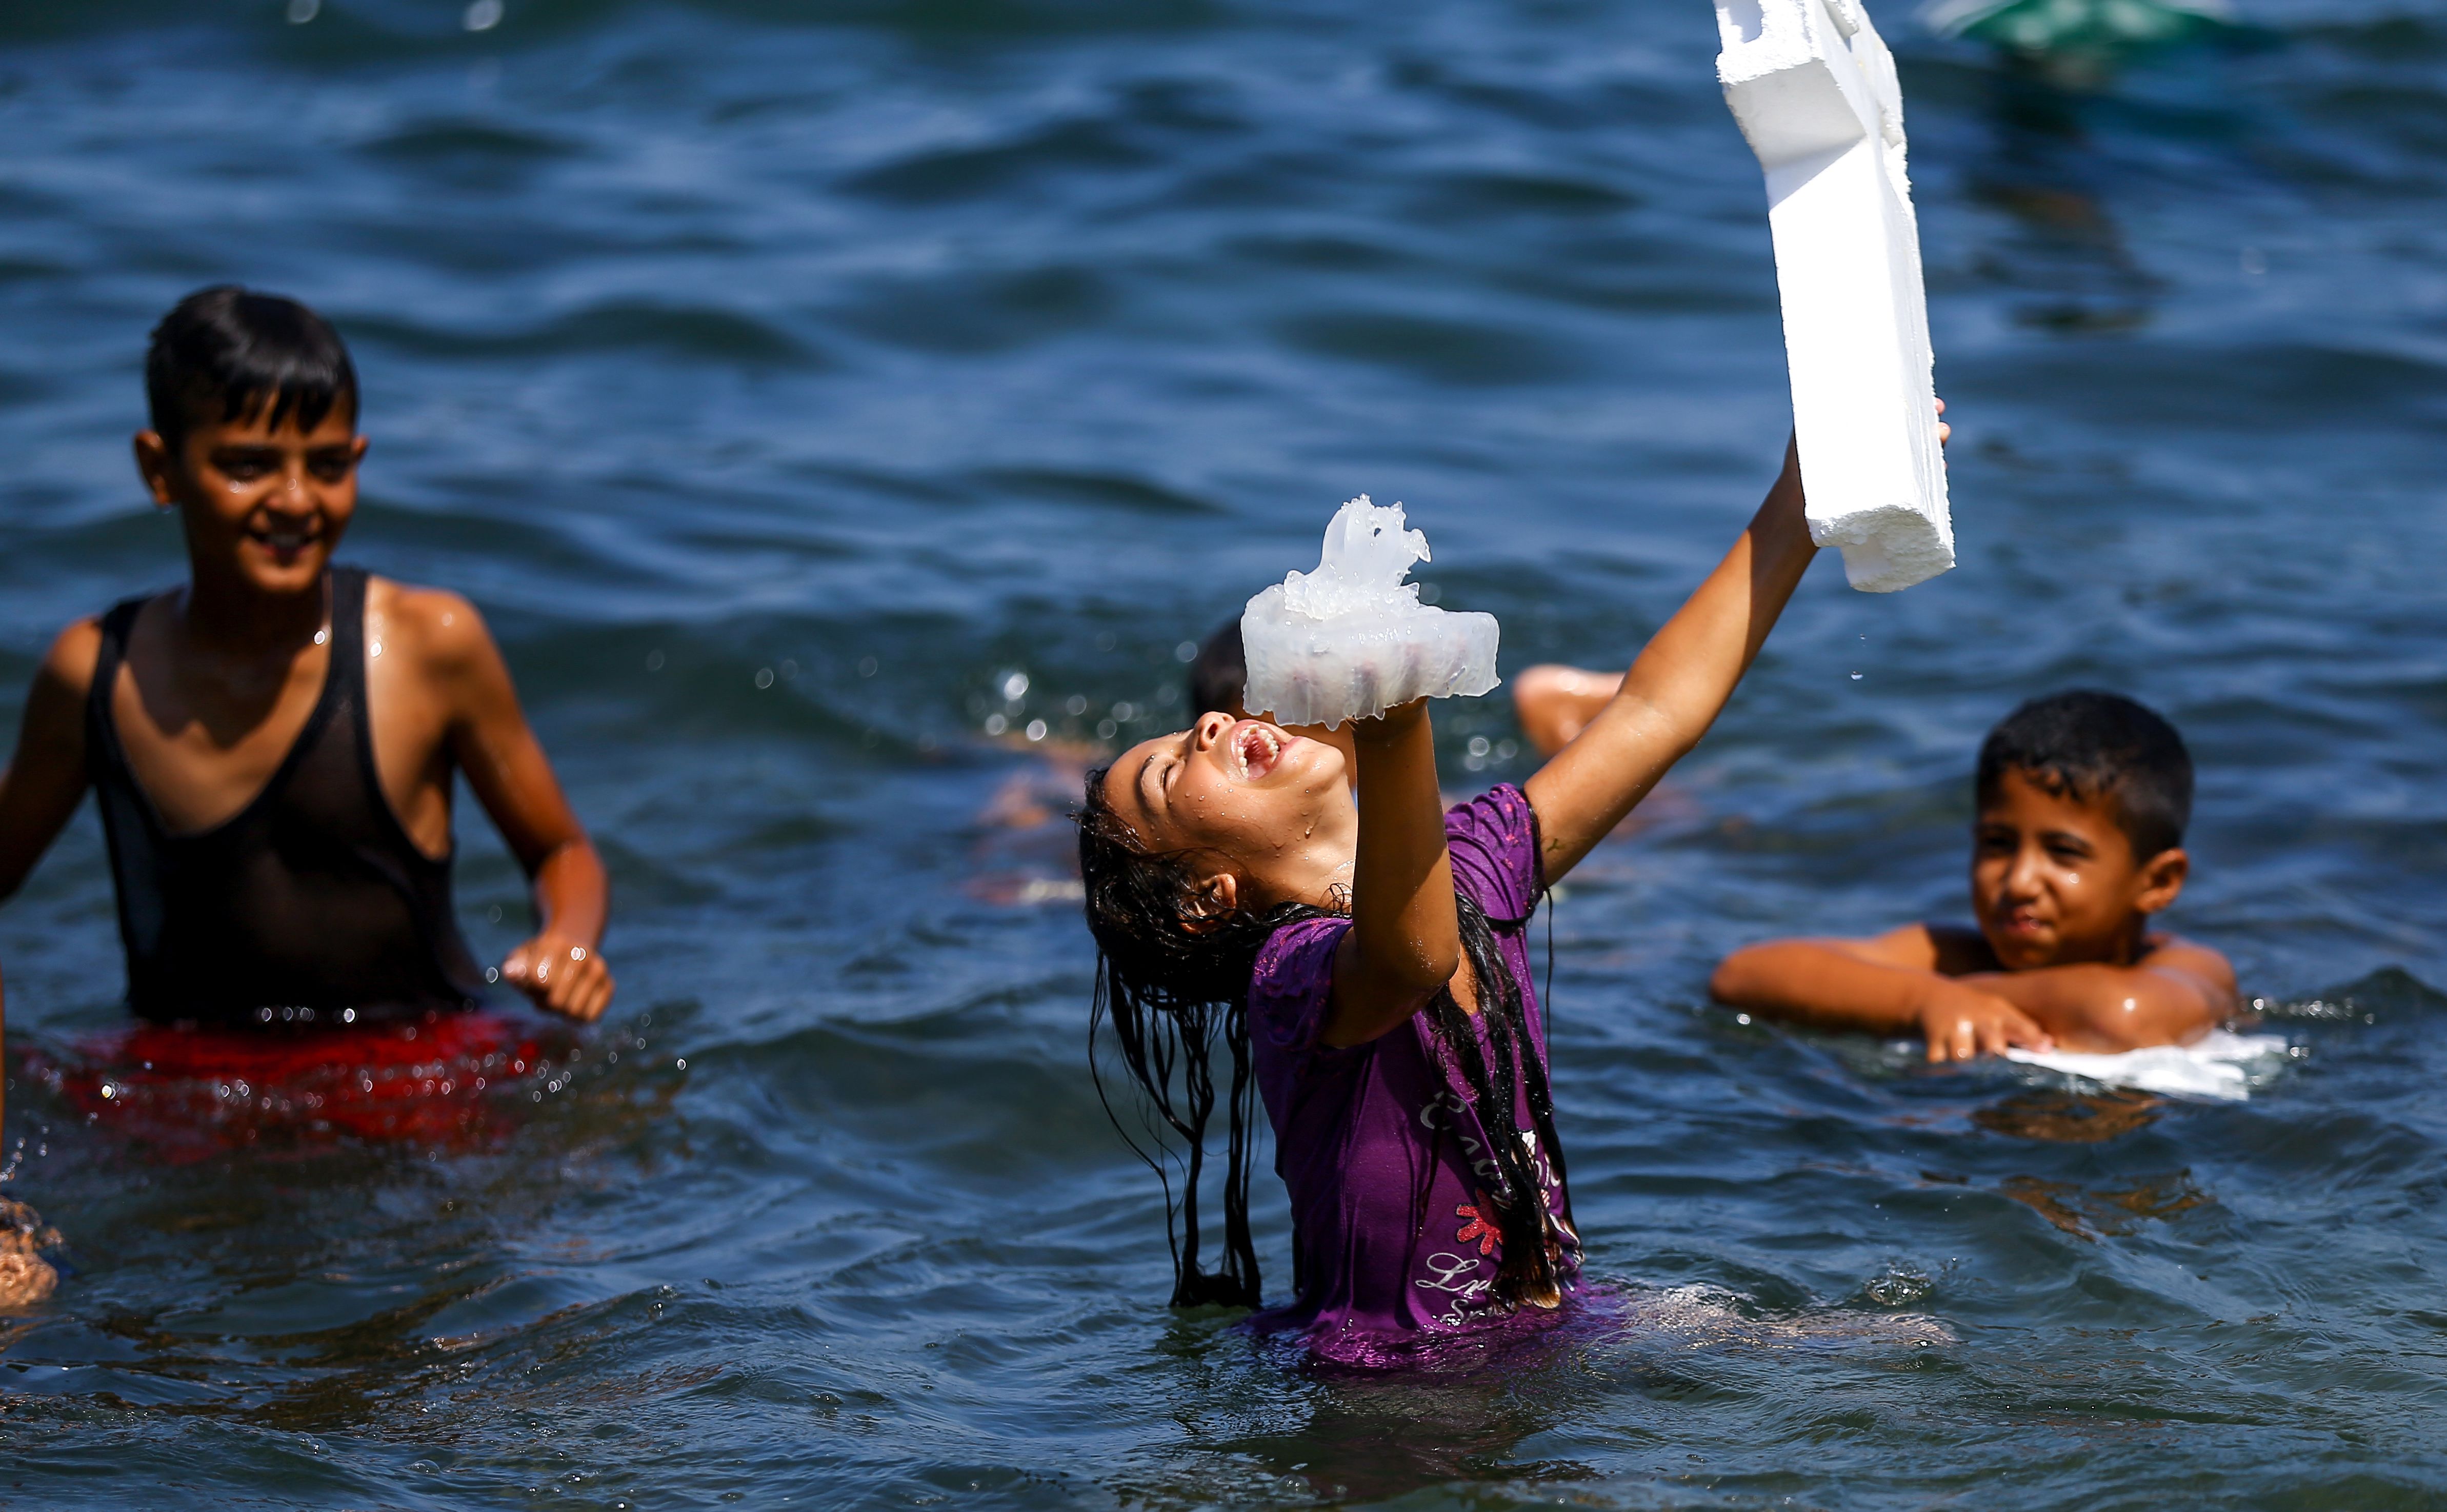 طفلة فلسطينية تضحك وتمسك قنديل البحر فى يدها